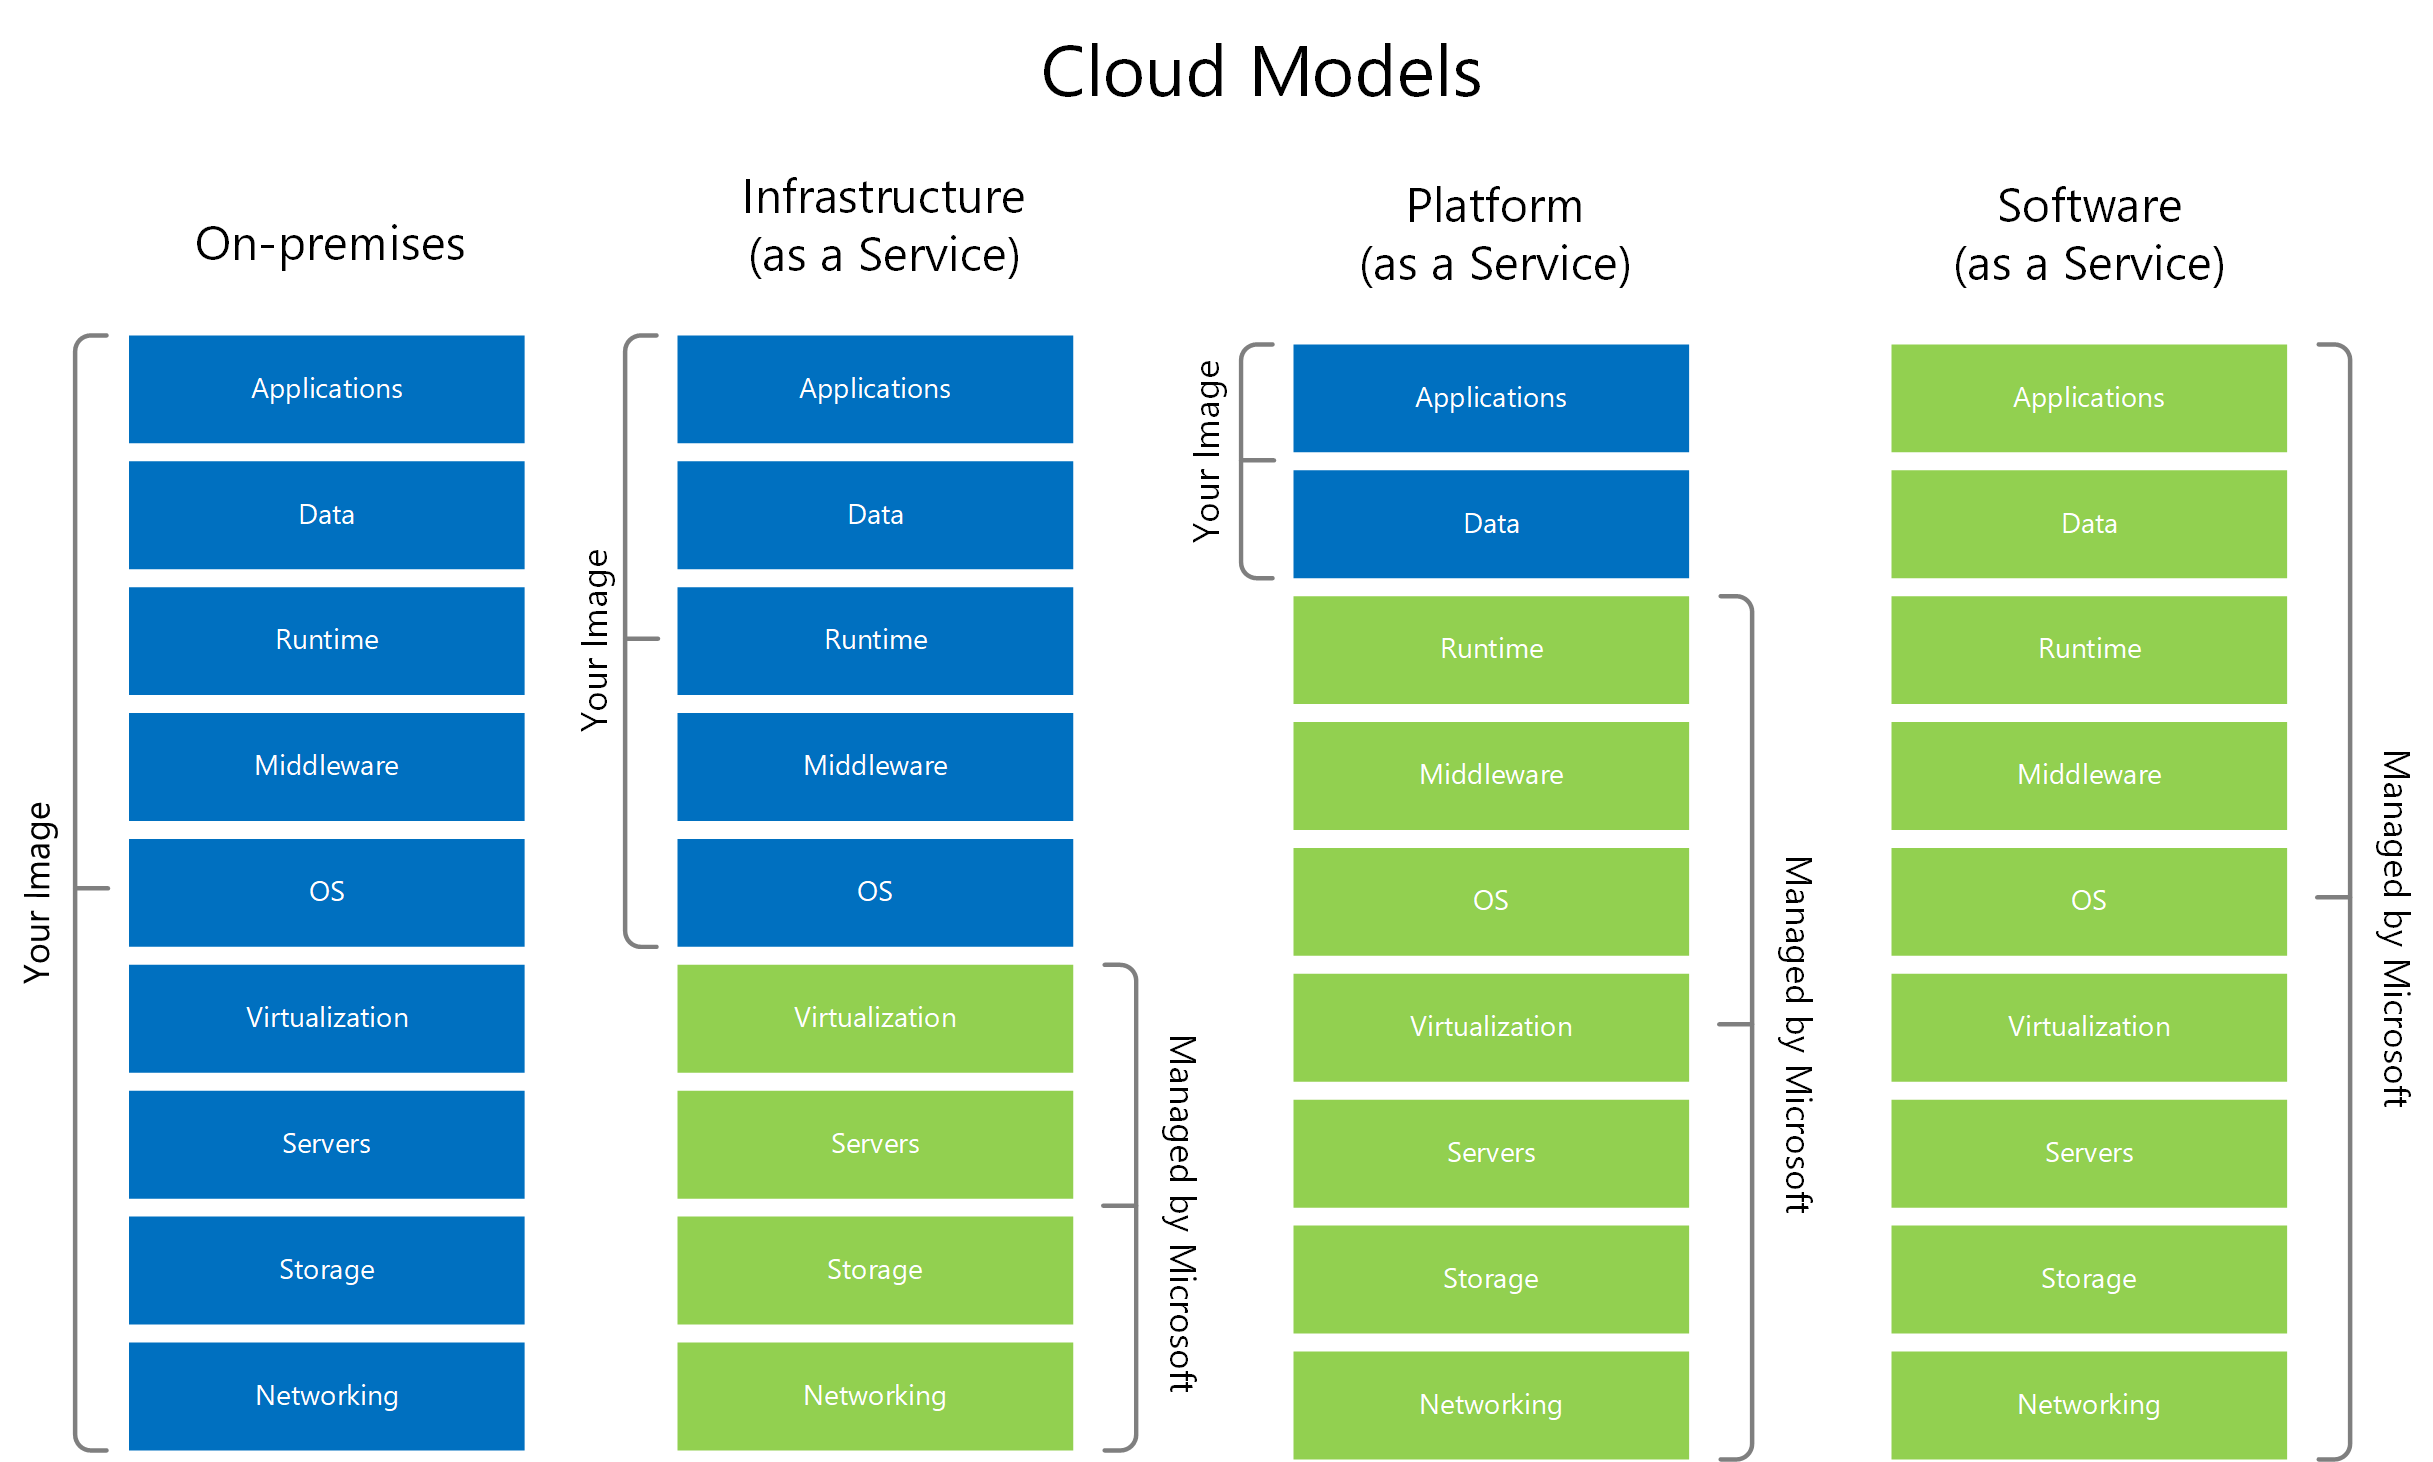 Diagramma dei modelli cloud, tra cui l'infrastruttura distribuita come servizio, la piattaforma distribuita come servizio e il software come servizio.